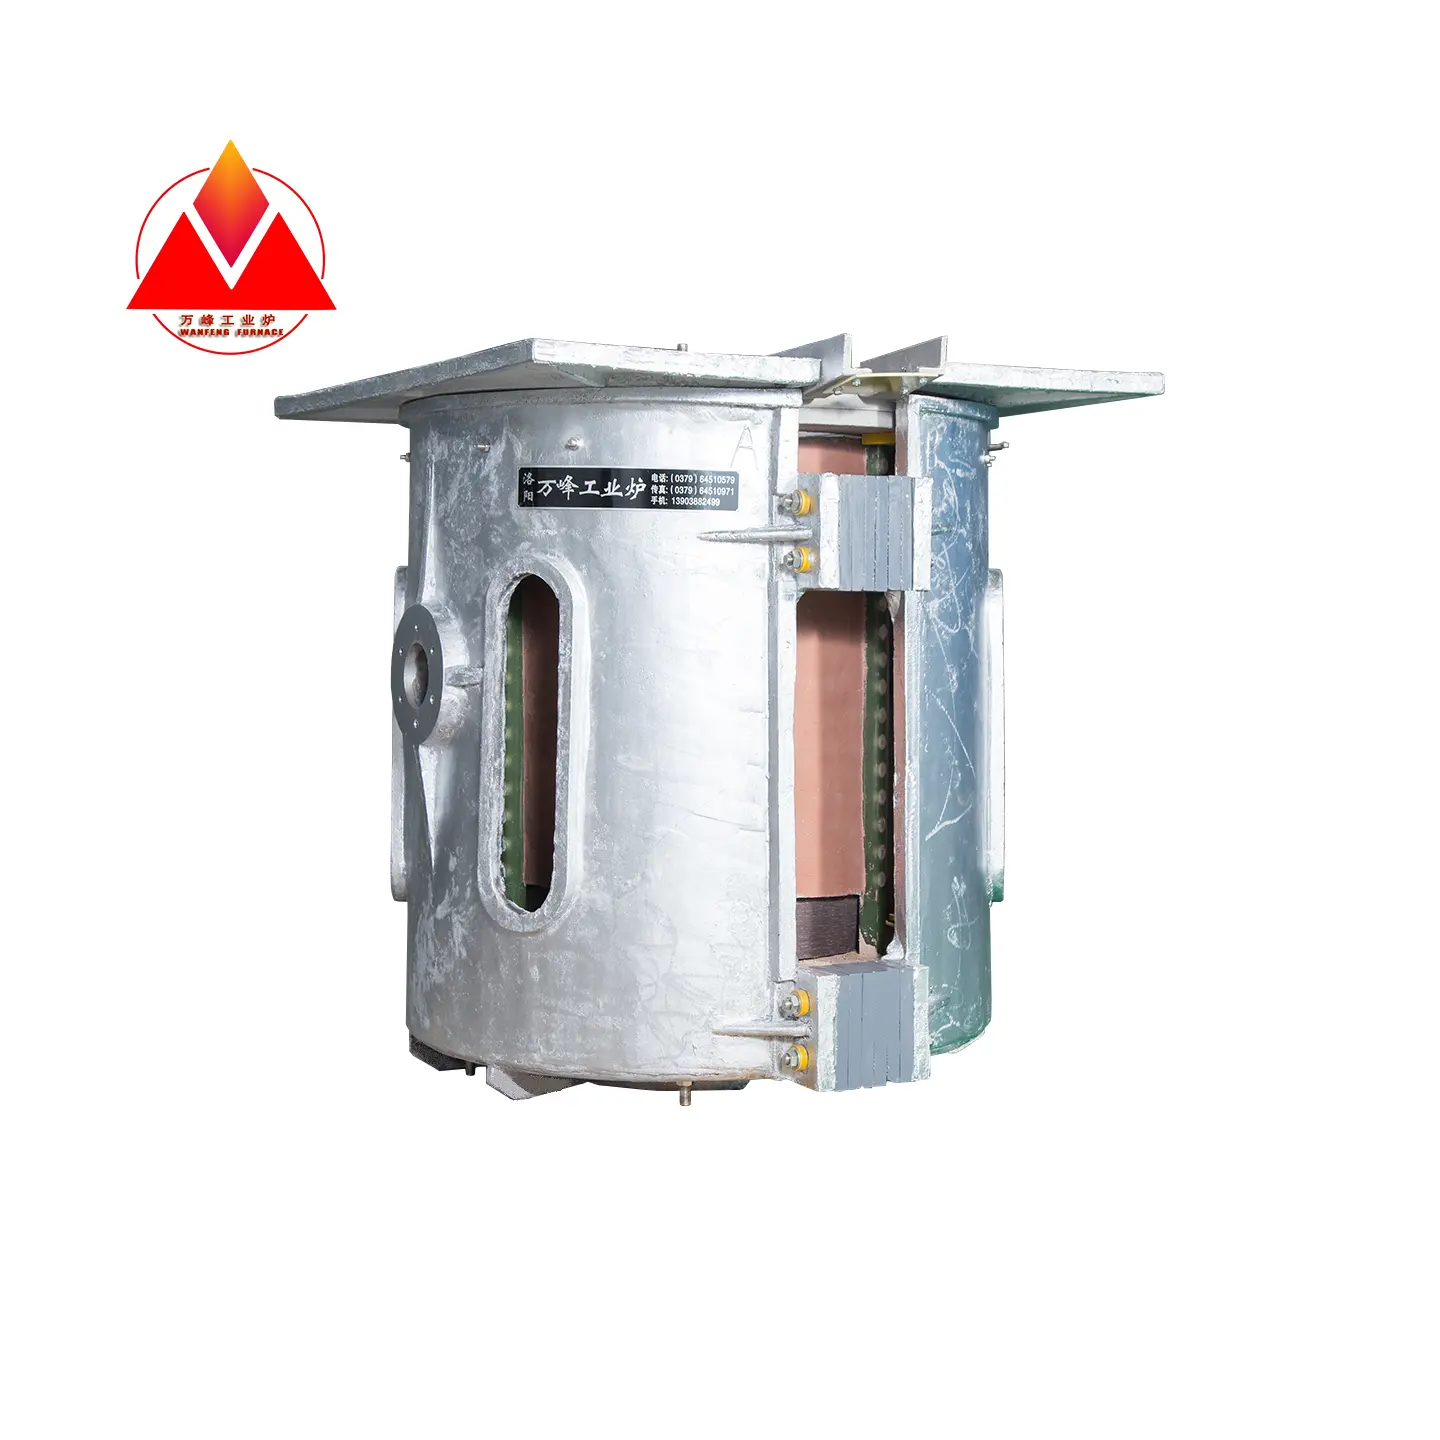 メルタルスクラップの使用鋼スクラップ溶解炉150 KG誘導電気鉄スクラップ溶解炉